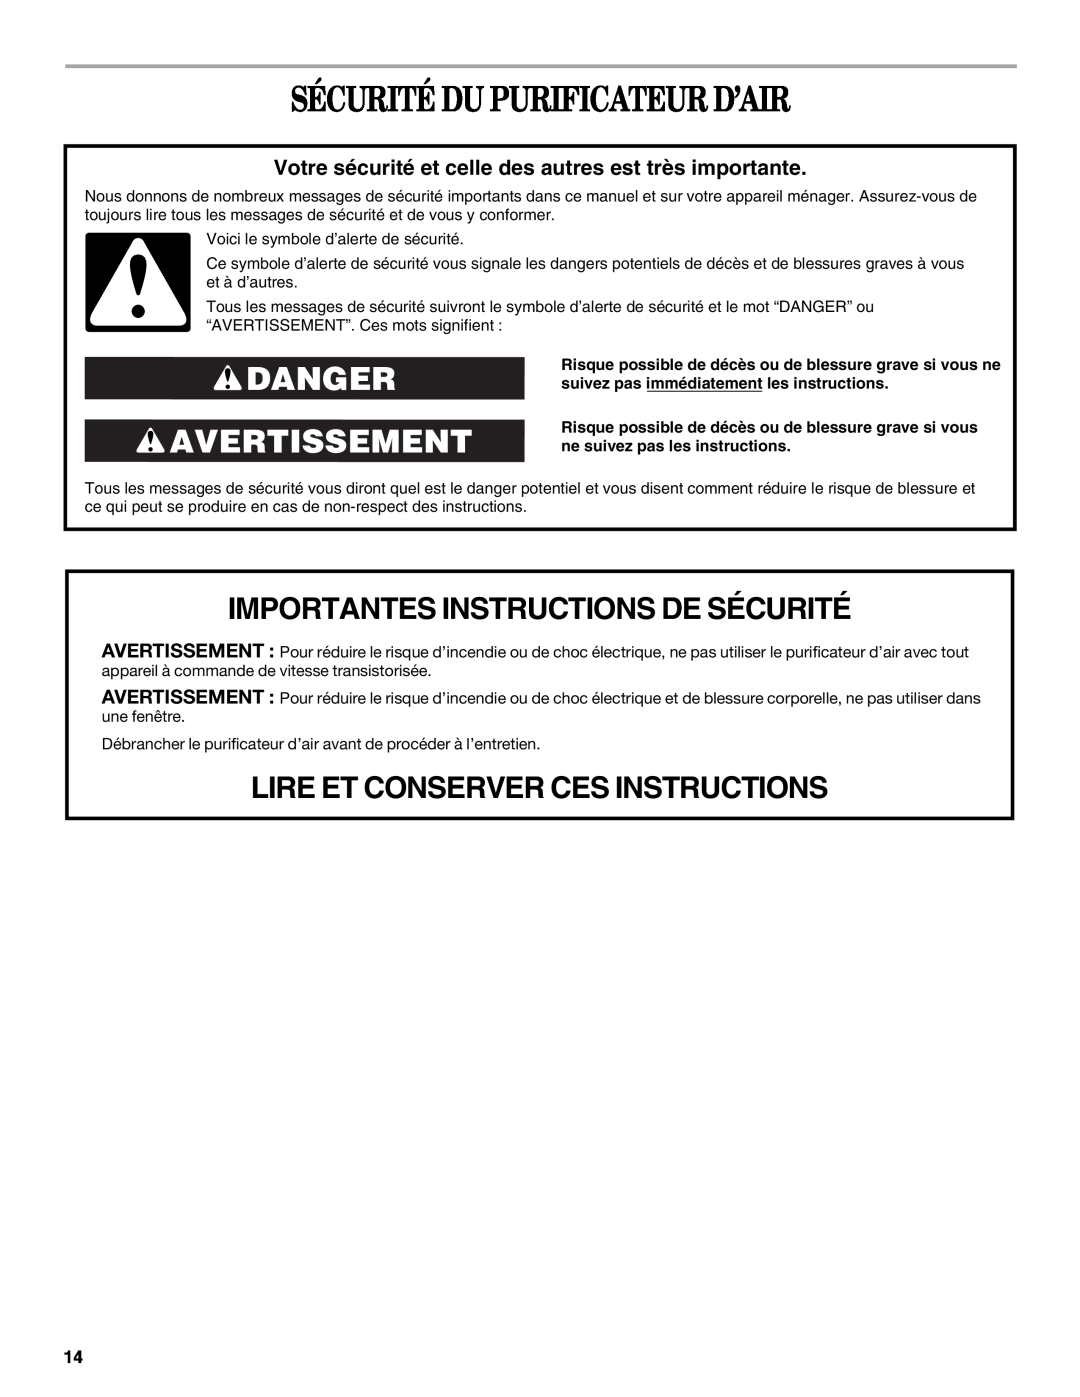 Whirlpool WP-AP510 manual Sécurité Du Purificateur D’Air, Danger Avertissement, Importantes Instructions De Sécurité 